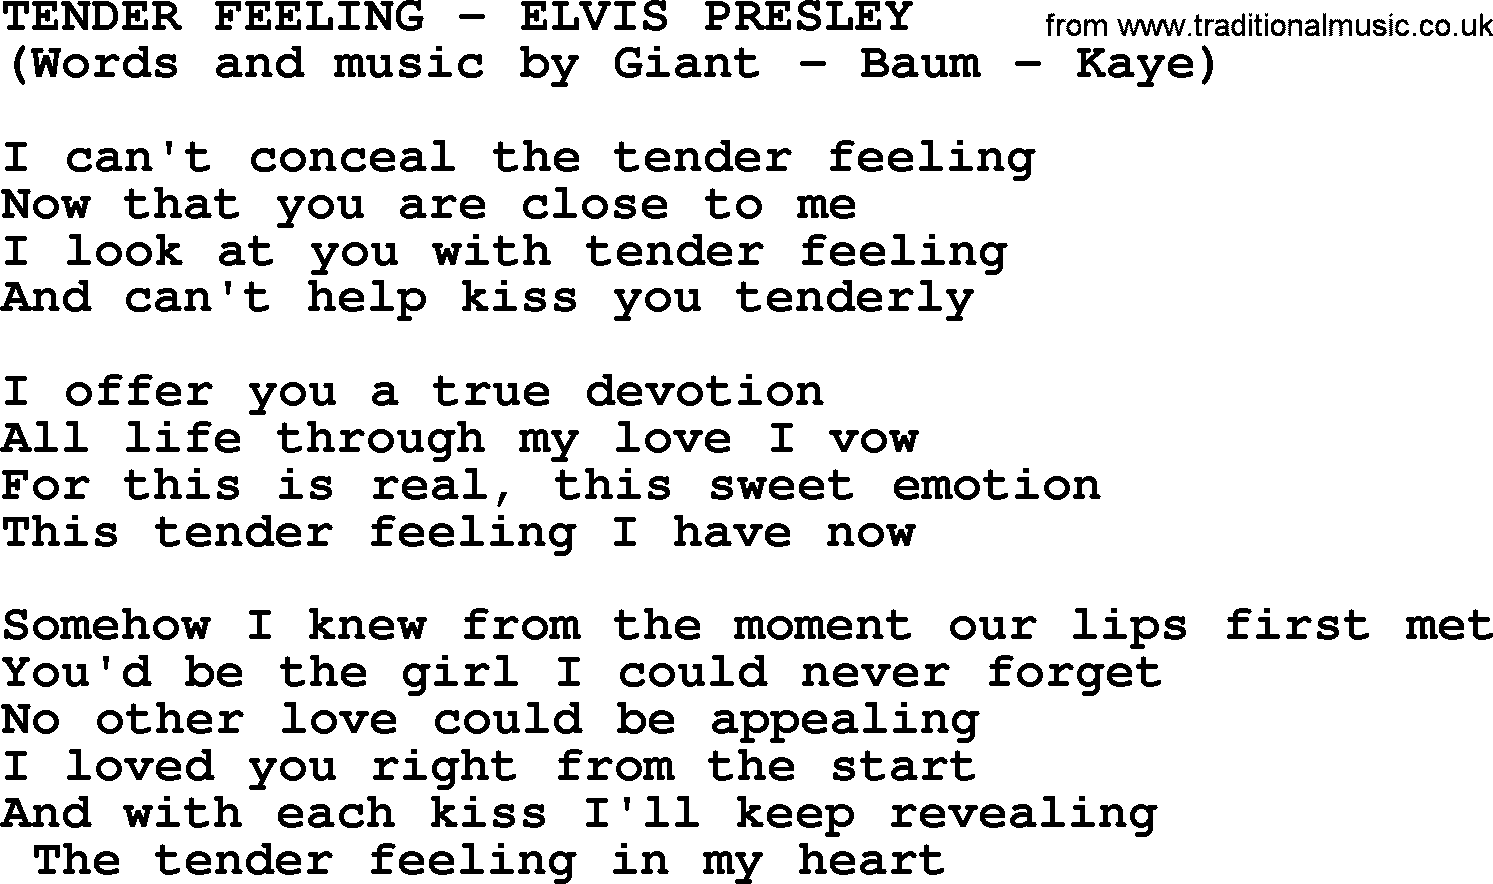 Elvis Presley song: Tender Feeling lyrics